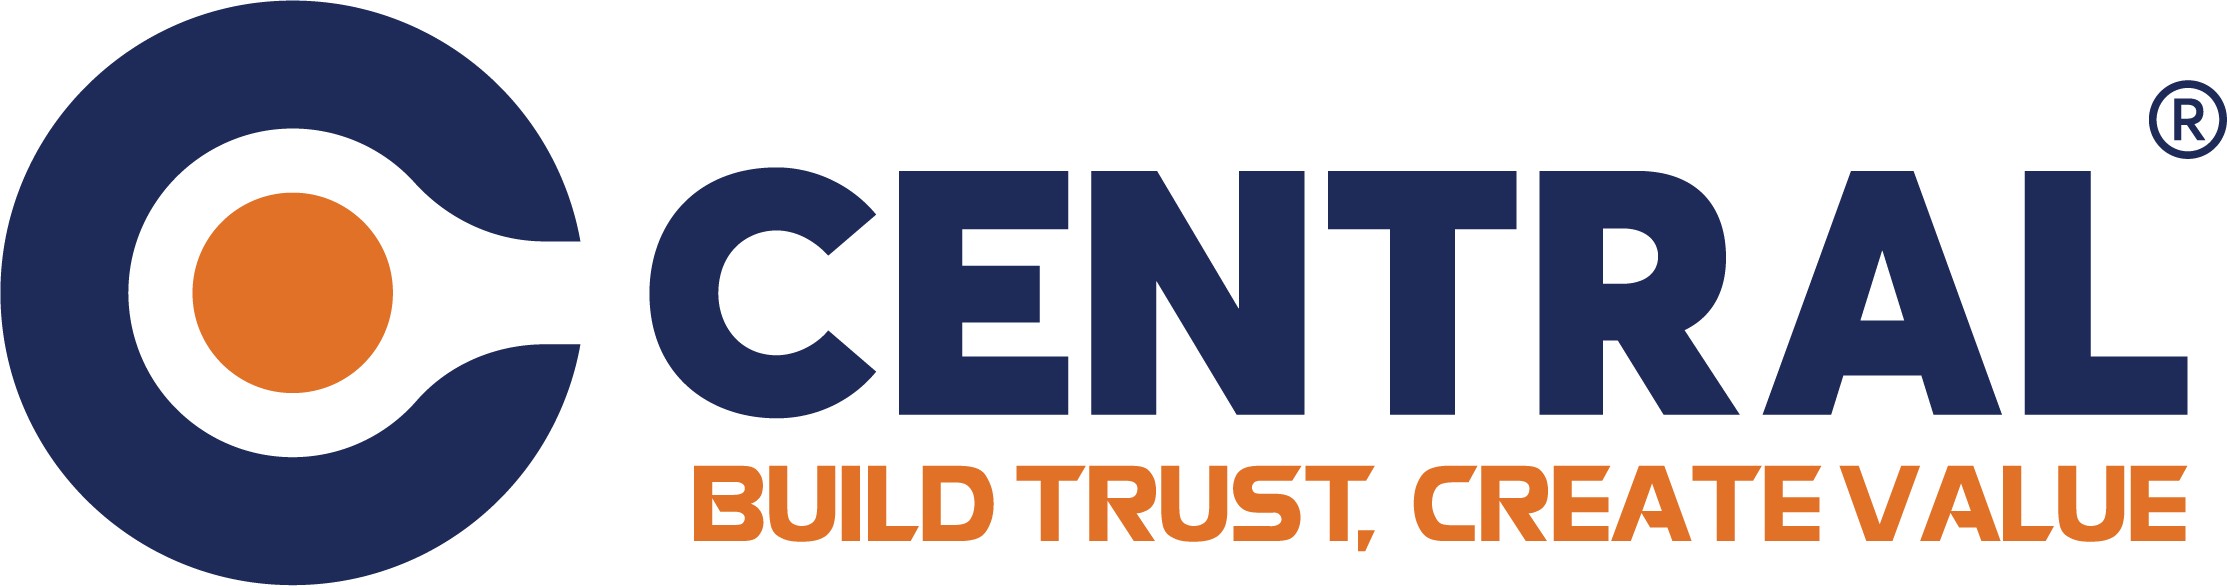 Hình ảnh logo công ty CENTRAL